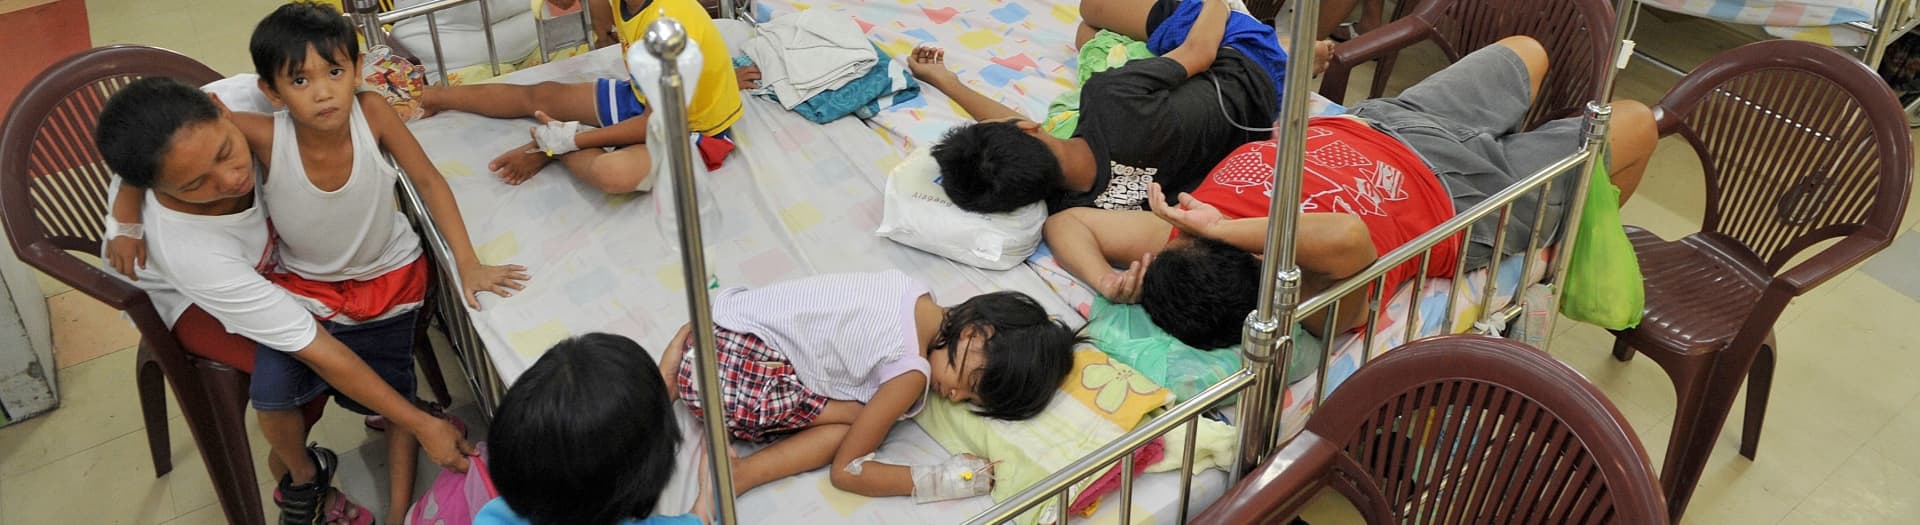 マニラの国立キリノ記念病院の小児病棟にて、デング熱流行により感染した子どもたち。